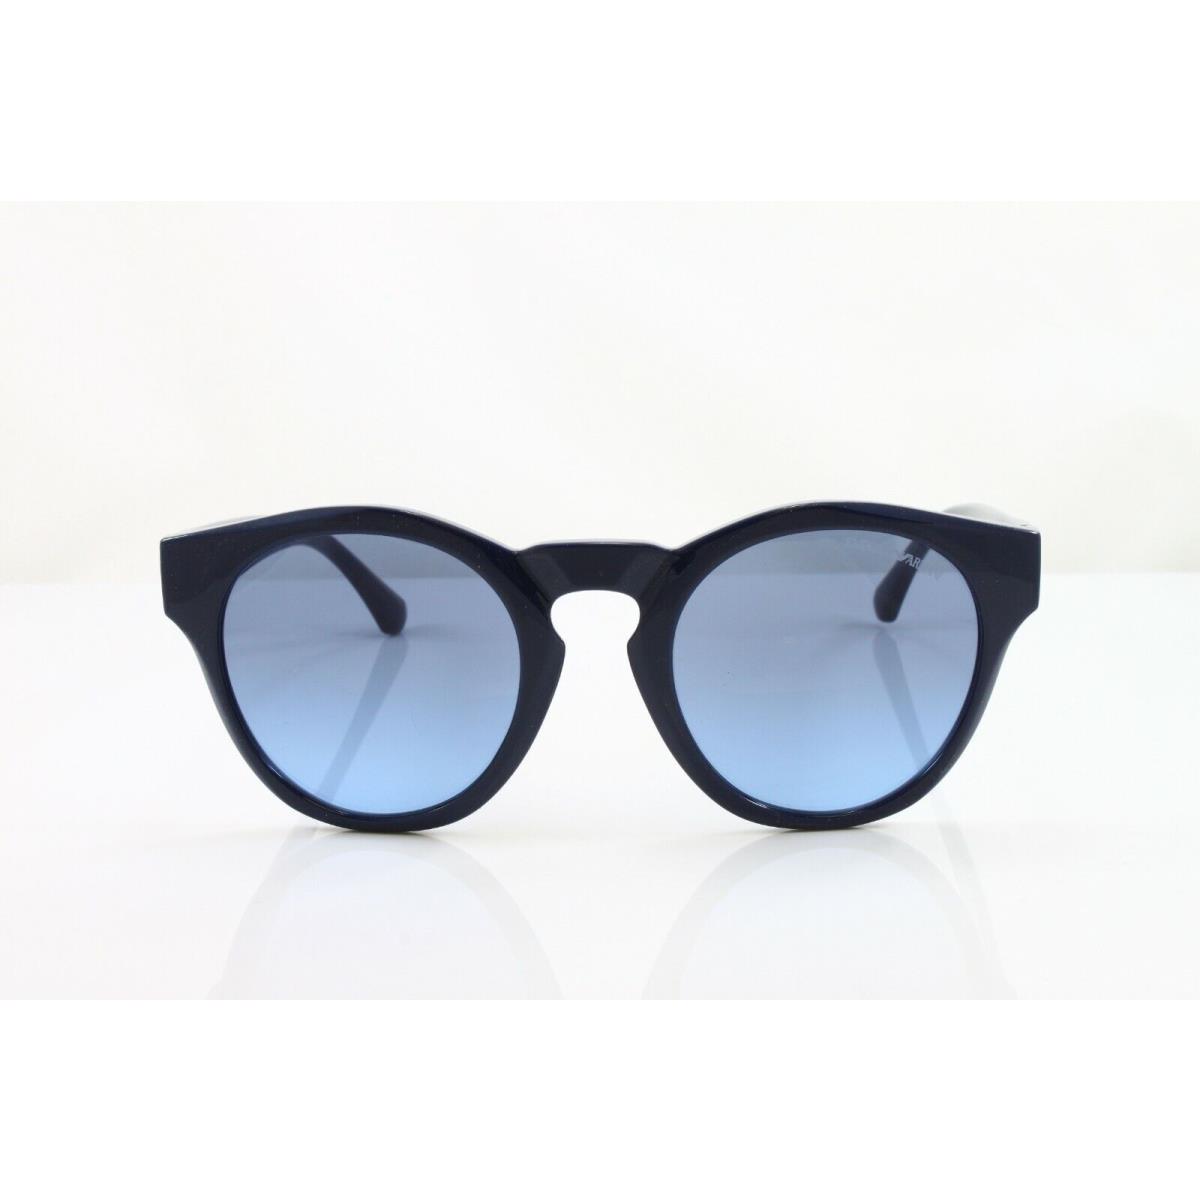 Emporio Armani sunglasses  - Blue Frame, Blue Lens 1